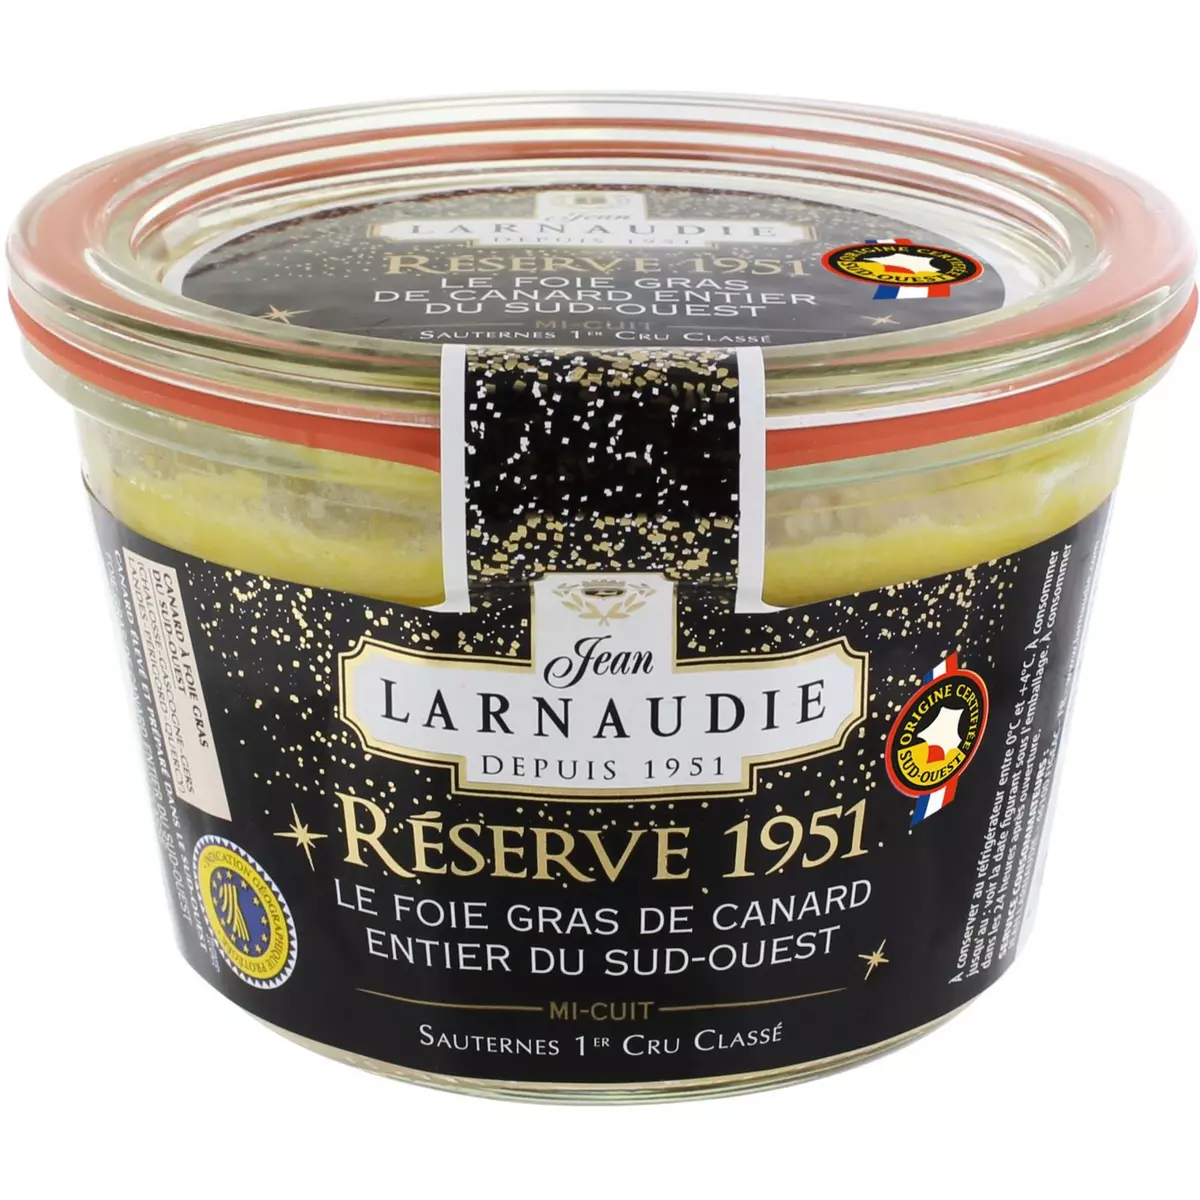 JEAN LARNAUDIE Foie gras entier de canard du Sud-Ouest mi-cuit Sauternes bocal 6-7 portions 280g